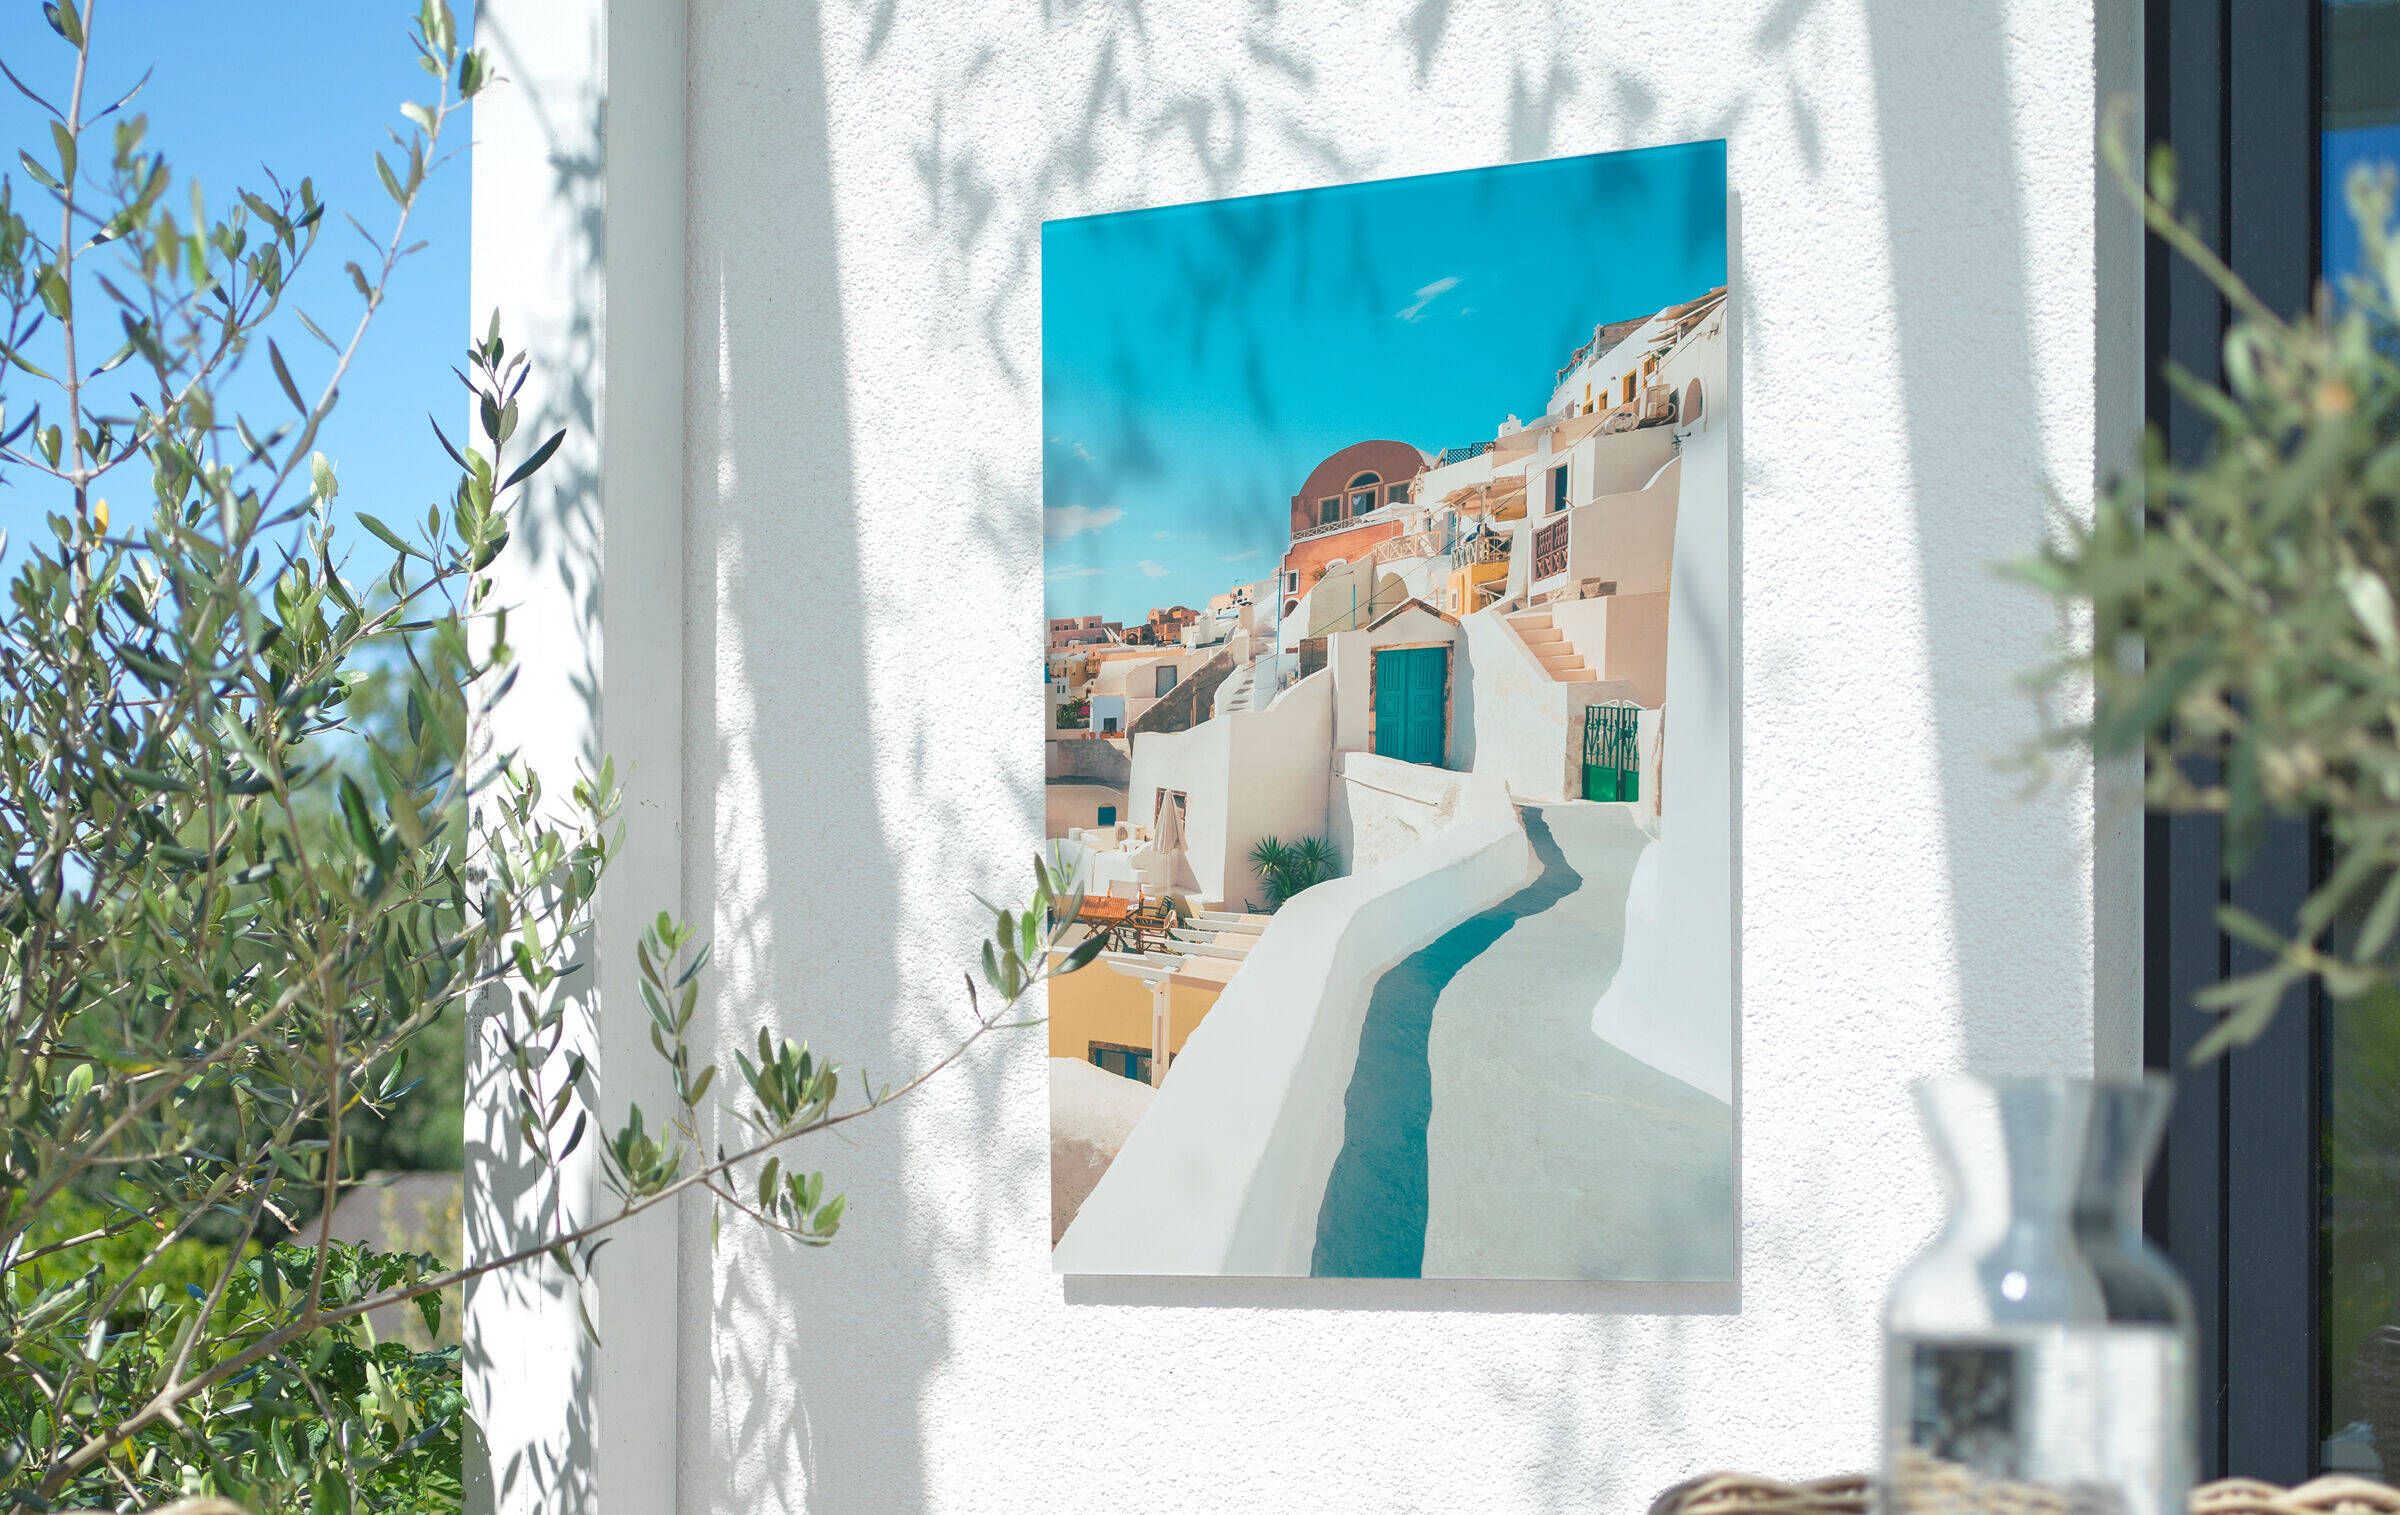 Wandbild mit mediterranem Stadtmotiv hängt an Hauswand auf einem Balkon. Im Vordergrund ist unscharf ein gedeckter Esstisch zu sehen.